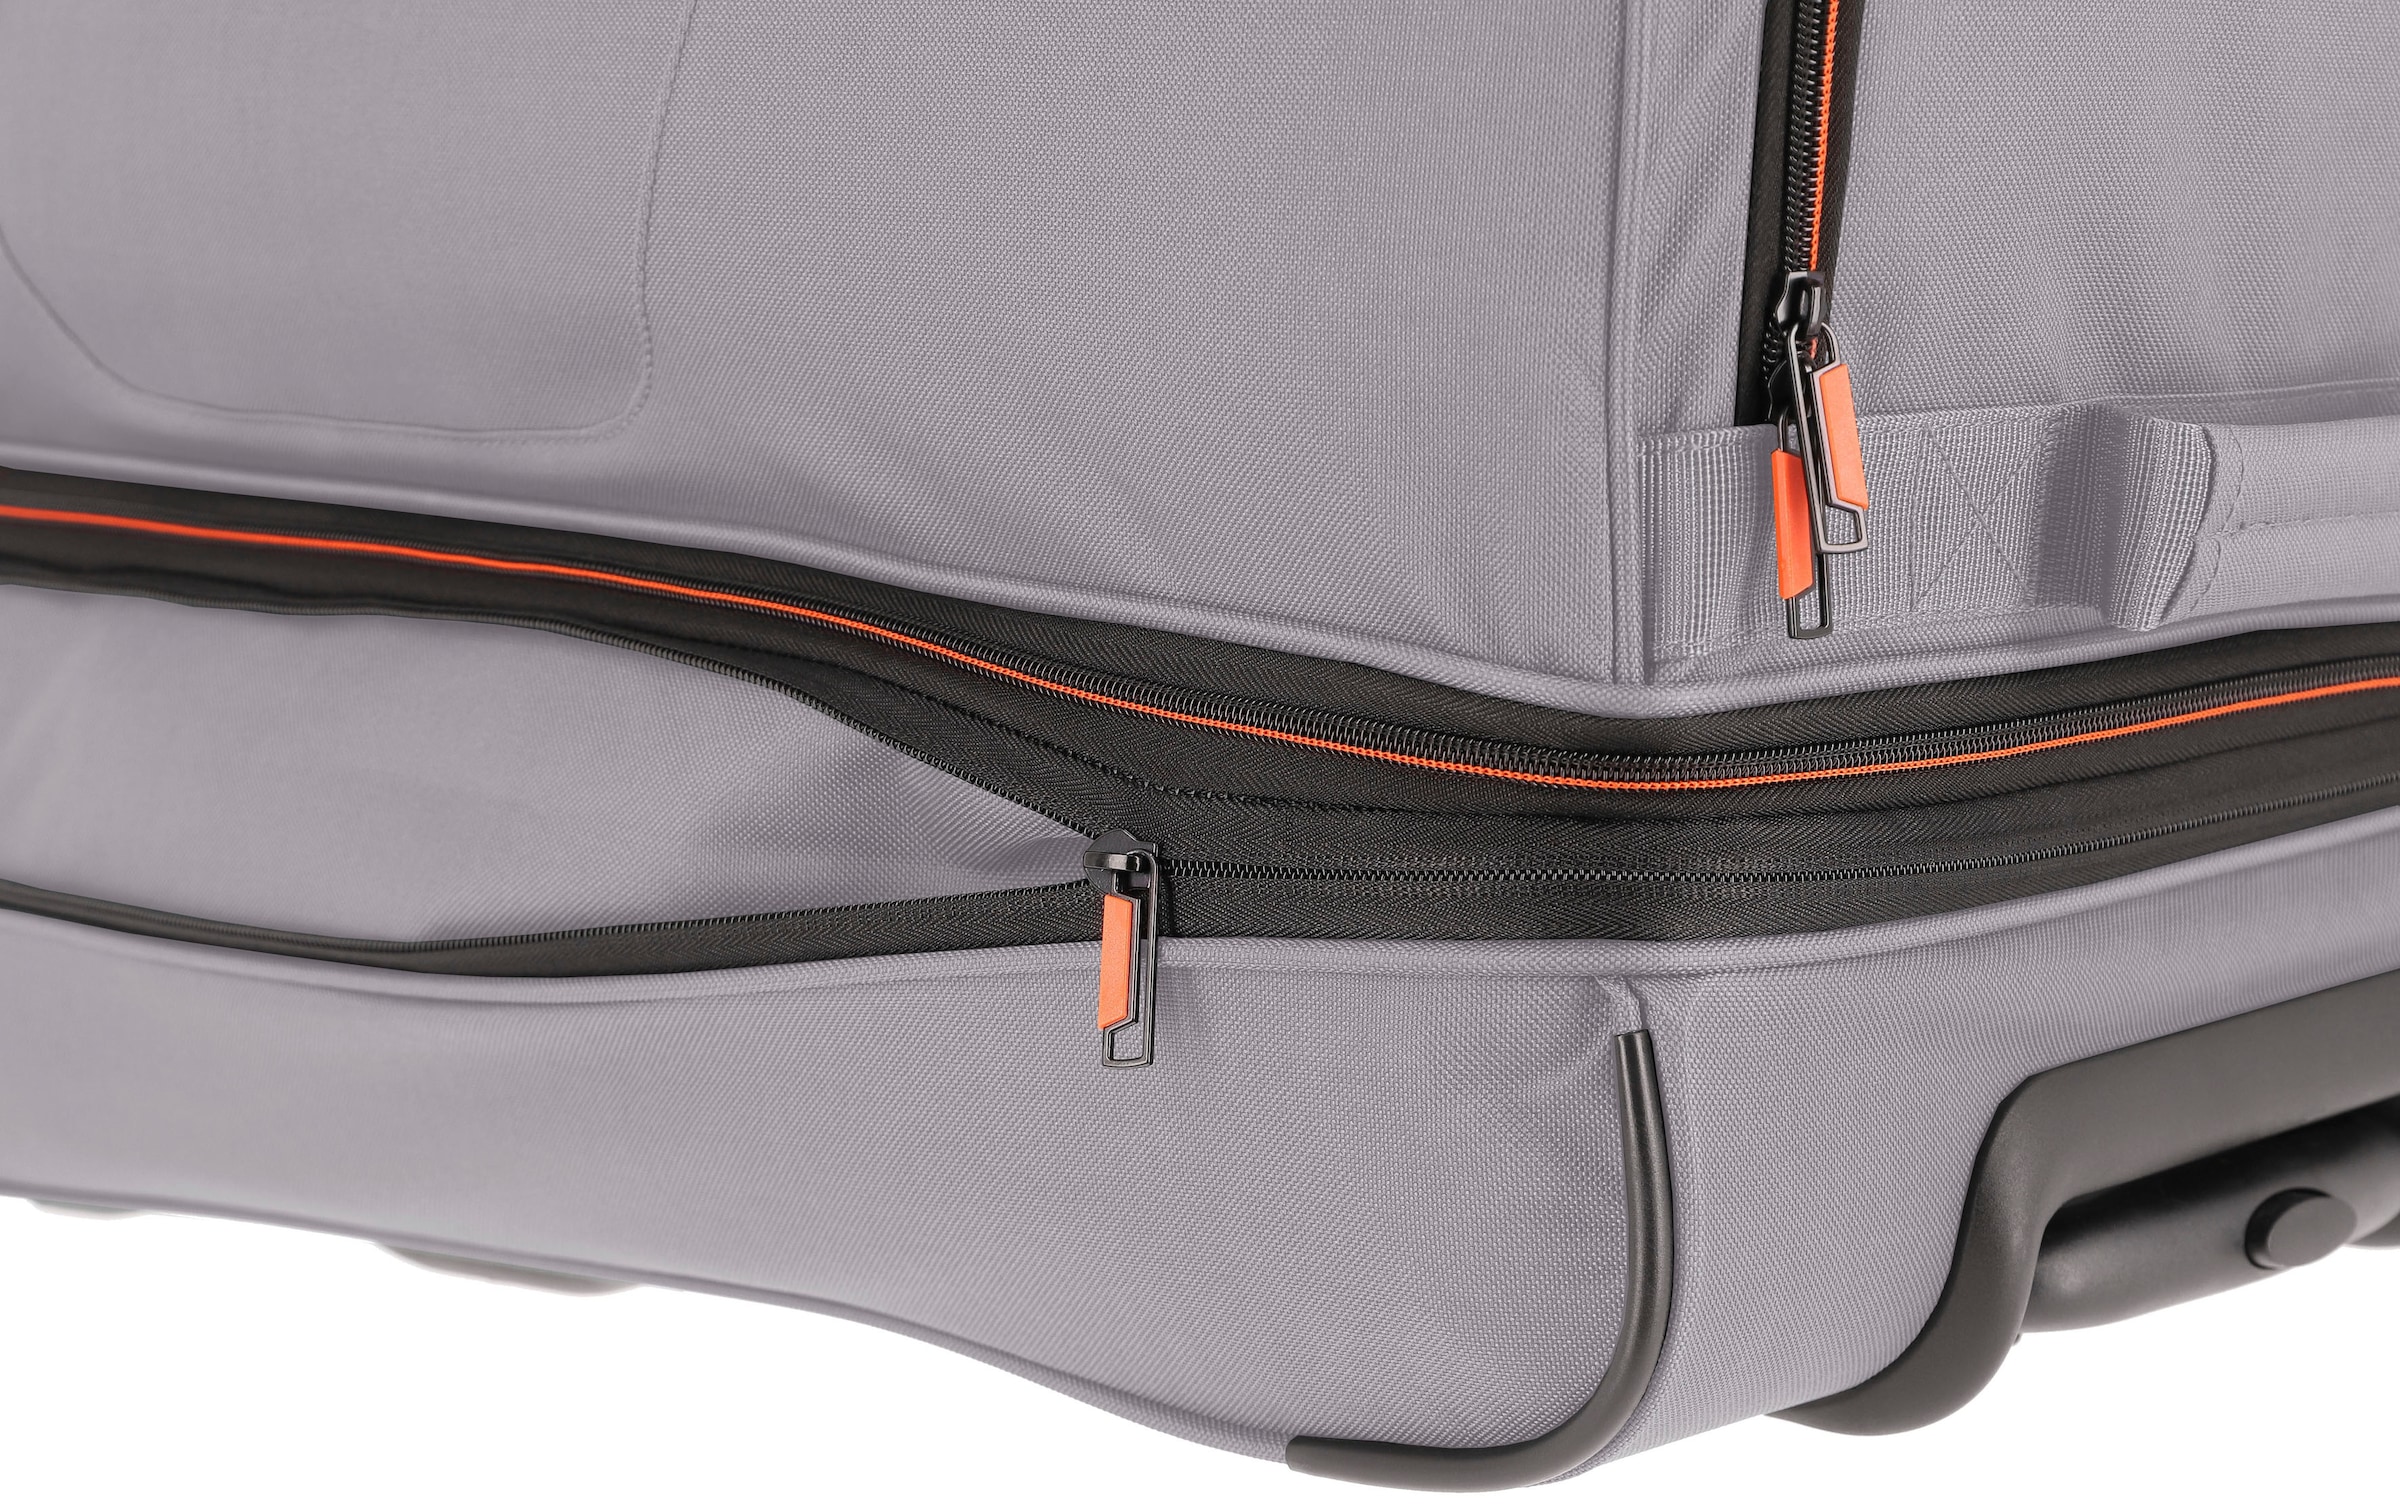 travelite Reisetasche »Basics, 70 cm, grau/orange«, mit Trolleyfunktion und  Volumenerweiterung online kaufen | I\'m walking